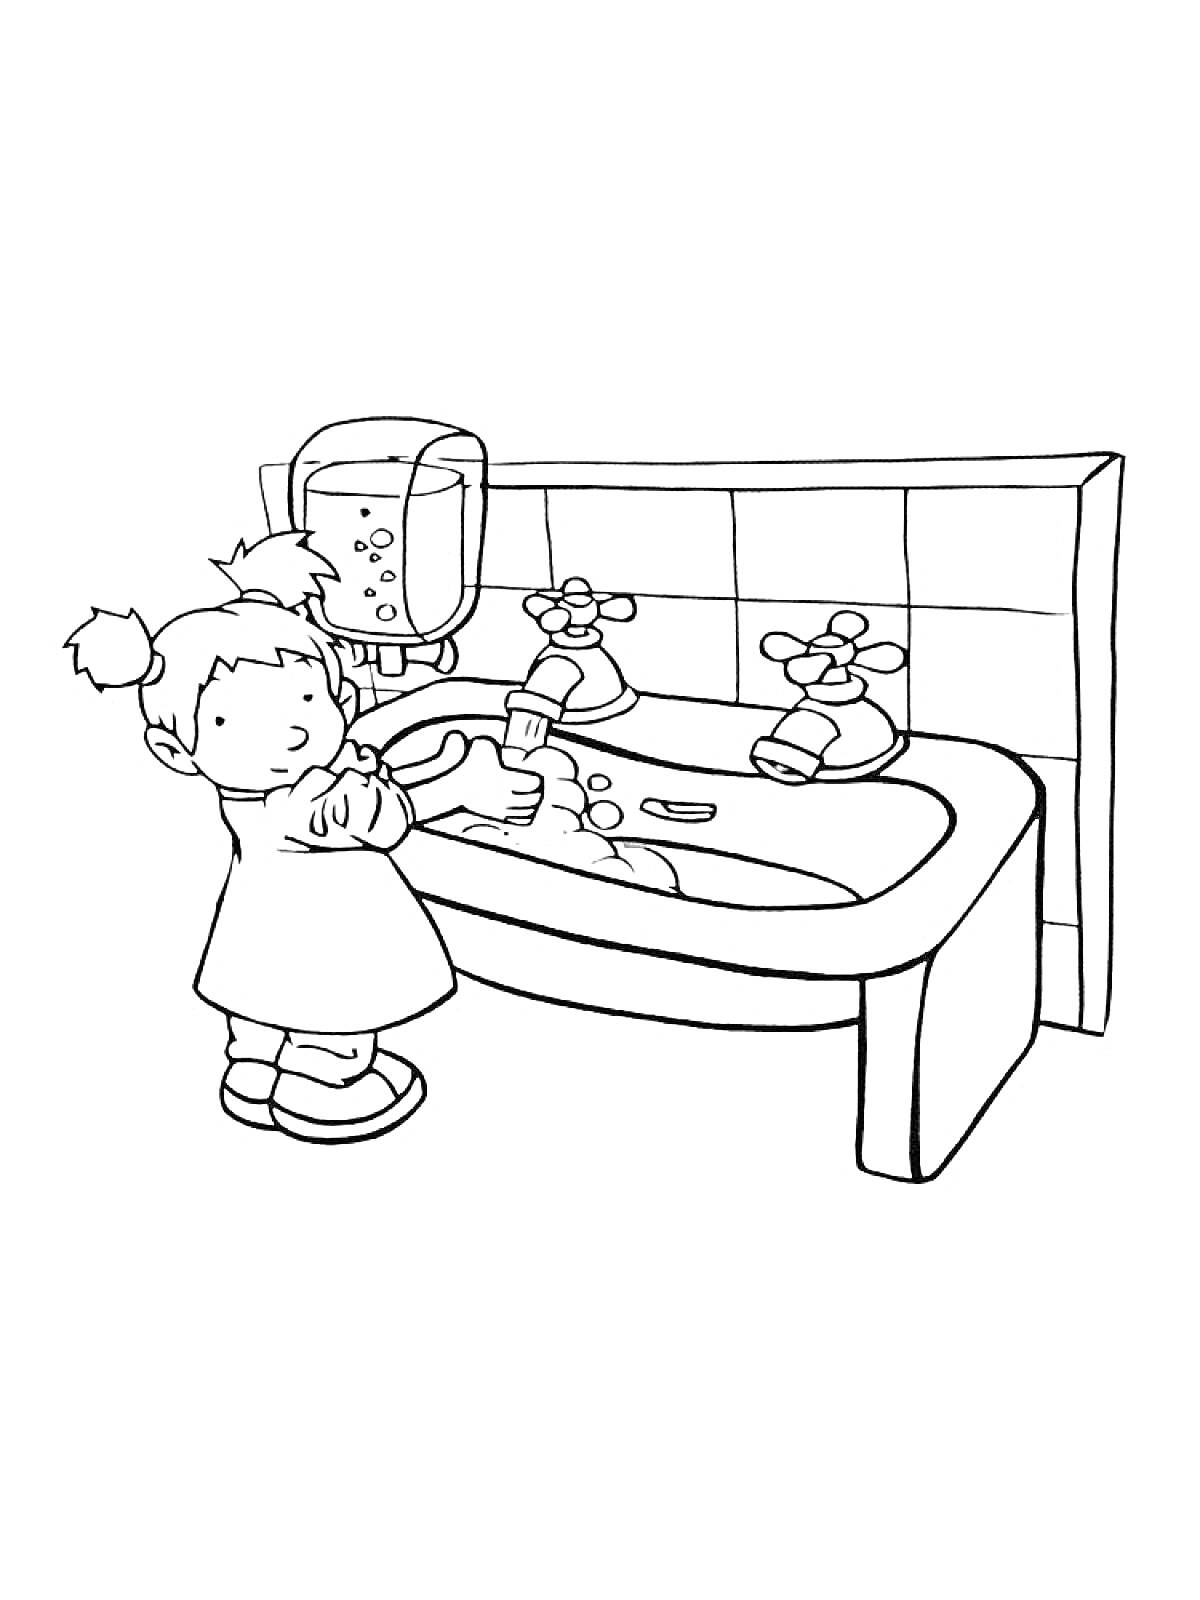 Девочка моет руки у раковины с мылом и краном